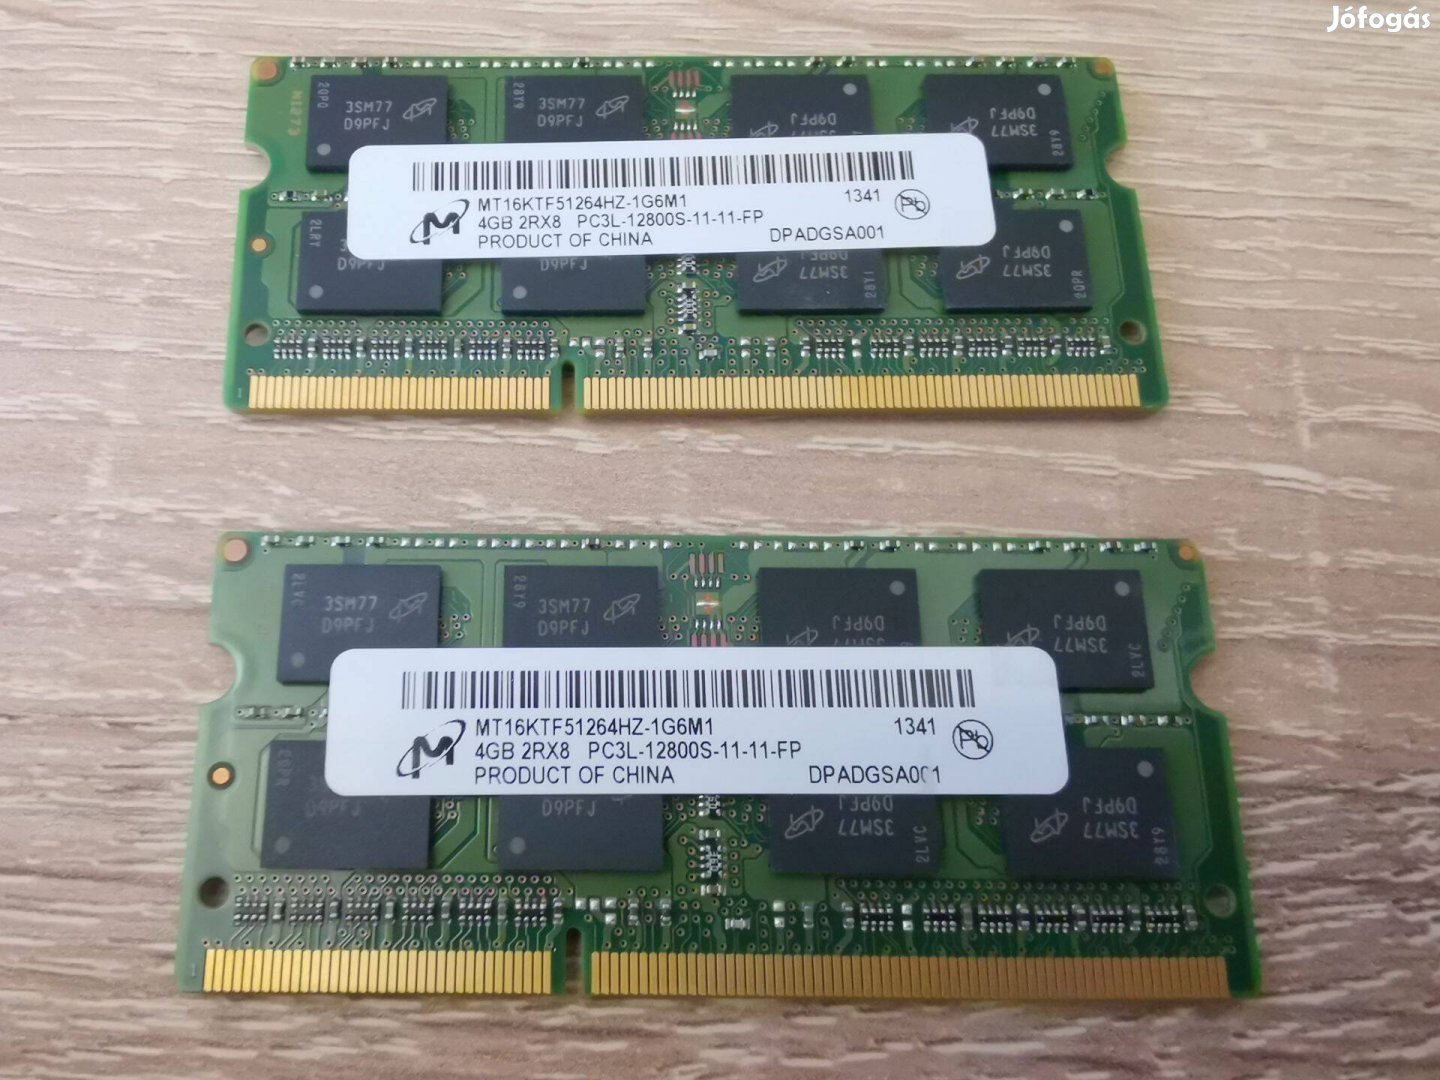 RAM Micron 2*4GB DDR3 1600MHz MT16KTF51264HZ-1G6M1